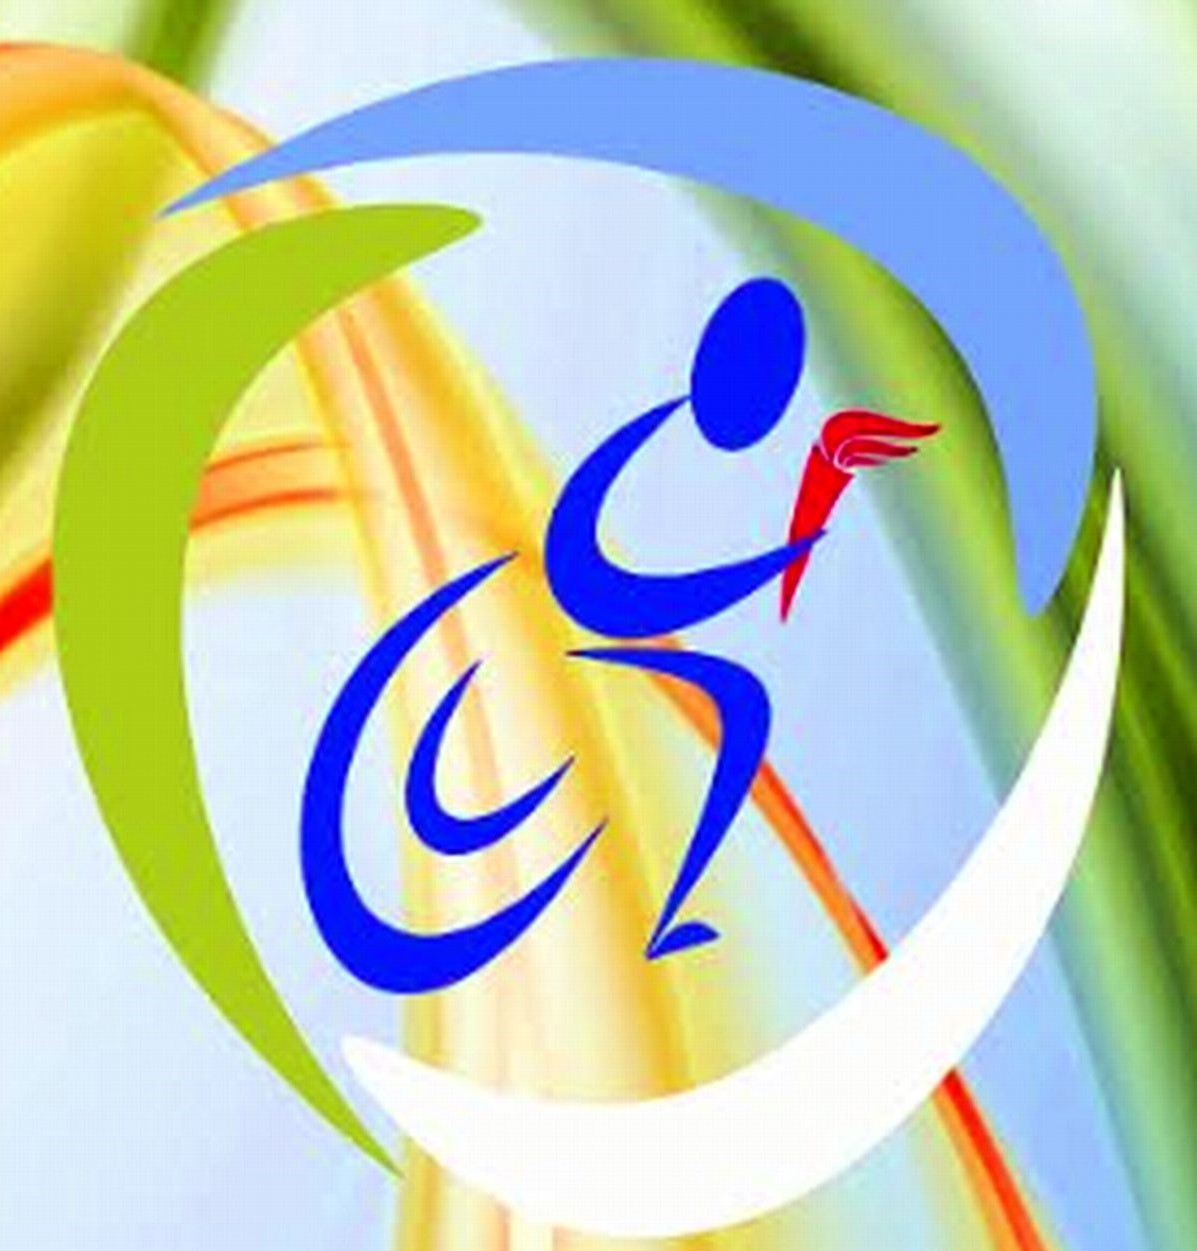 09 сентября 2020 года состоятся соревнования по легкой атлетике в рамках Спартакиады ВОГ, ВОС, ВОИ.